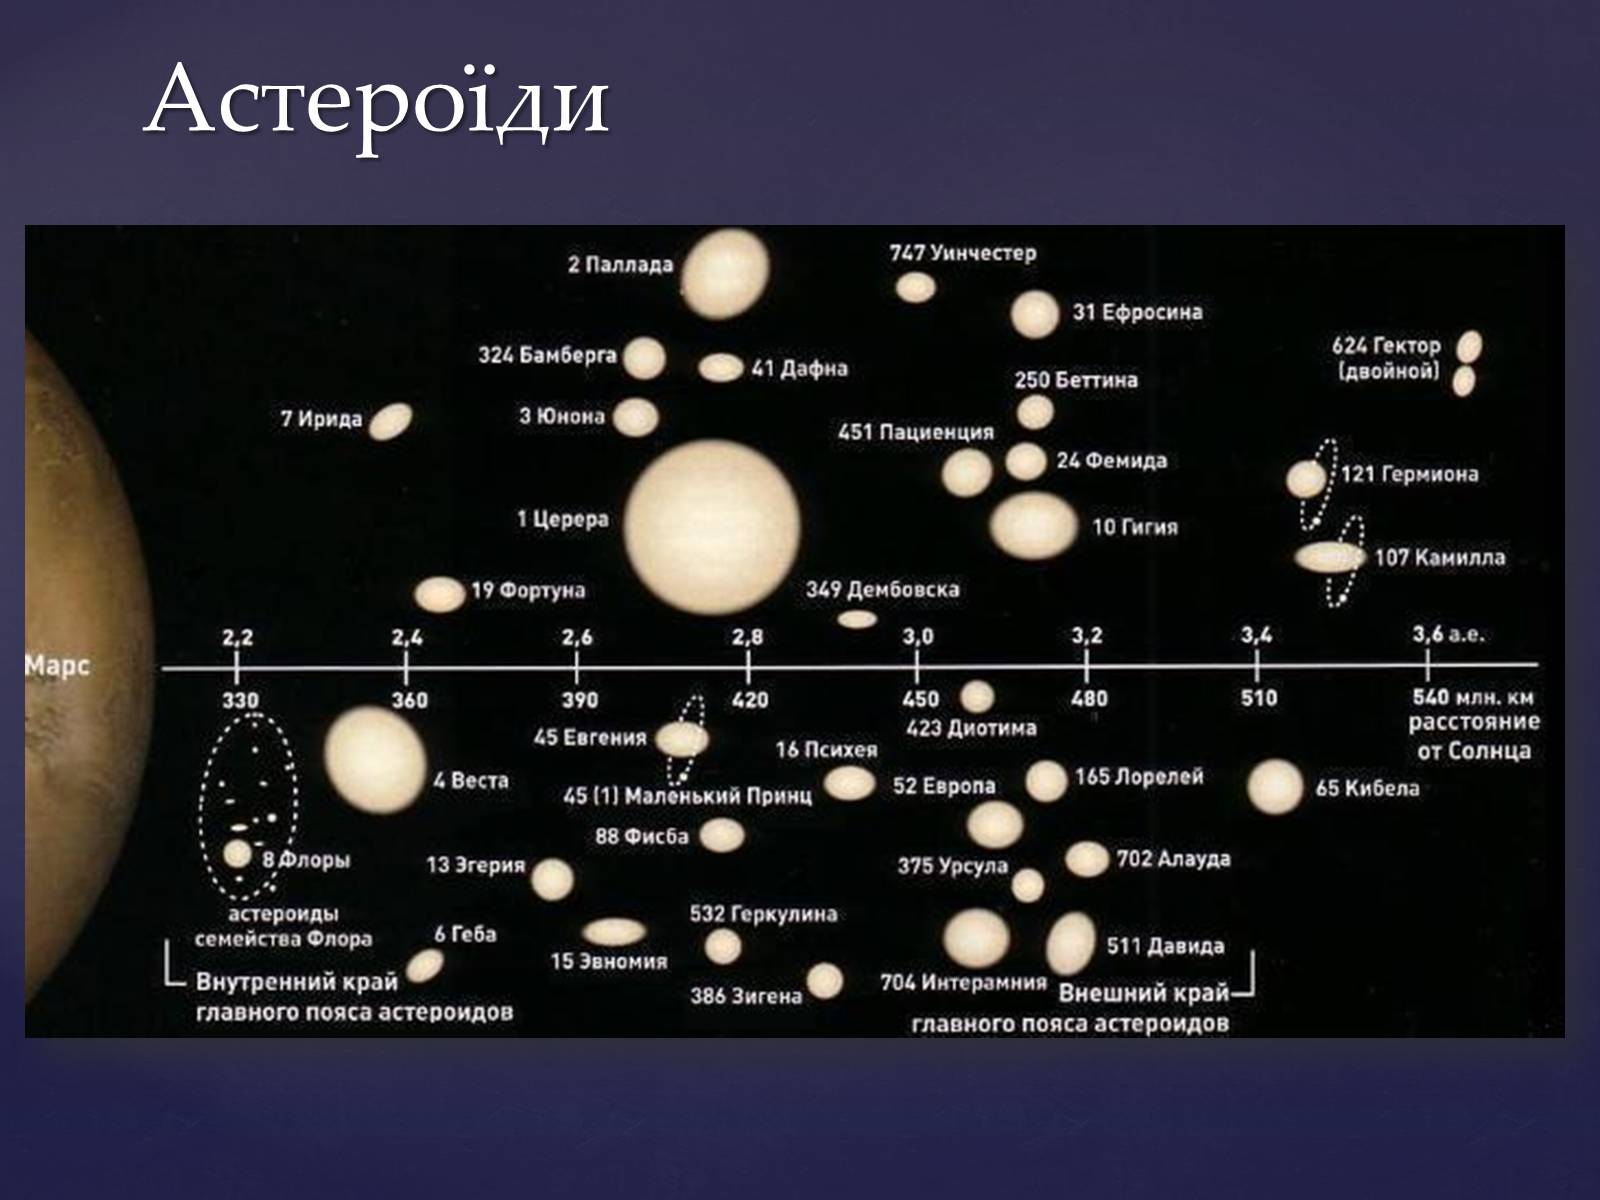 Пояса планет солнечной системы. Пояс астероидов в солнечной системе и Церрера. Церера в солнечной системе. Планета Церера на карте солнечной системы. Карликовые планеты в поясе астероидов.